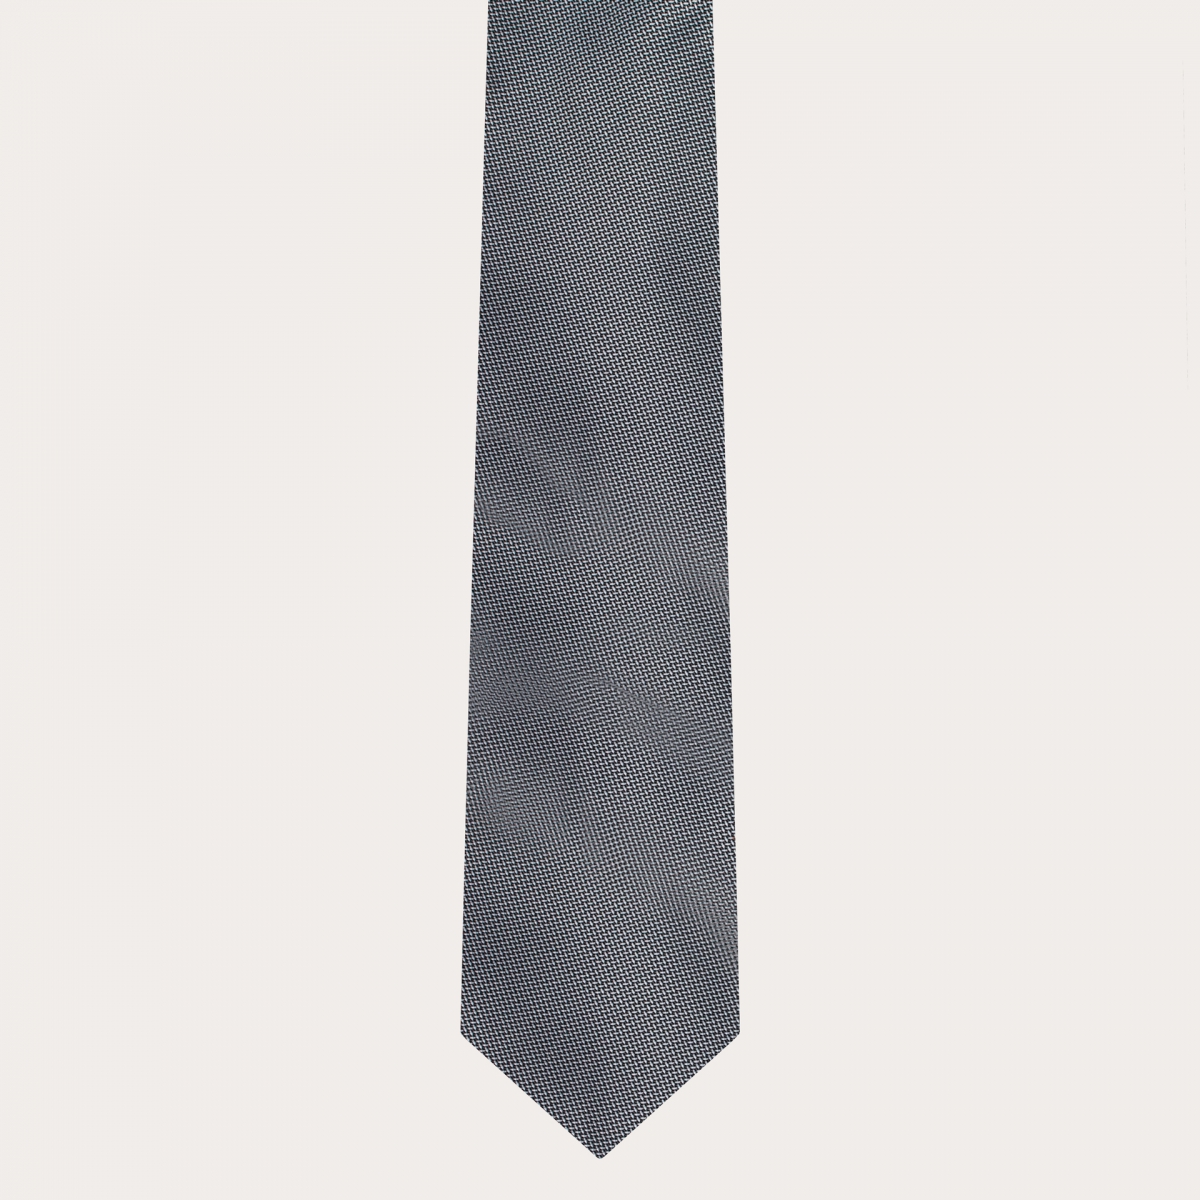 BRUCLE Cravate élégante en soie jacquard avec micro-motif argenté